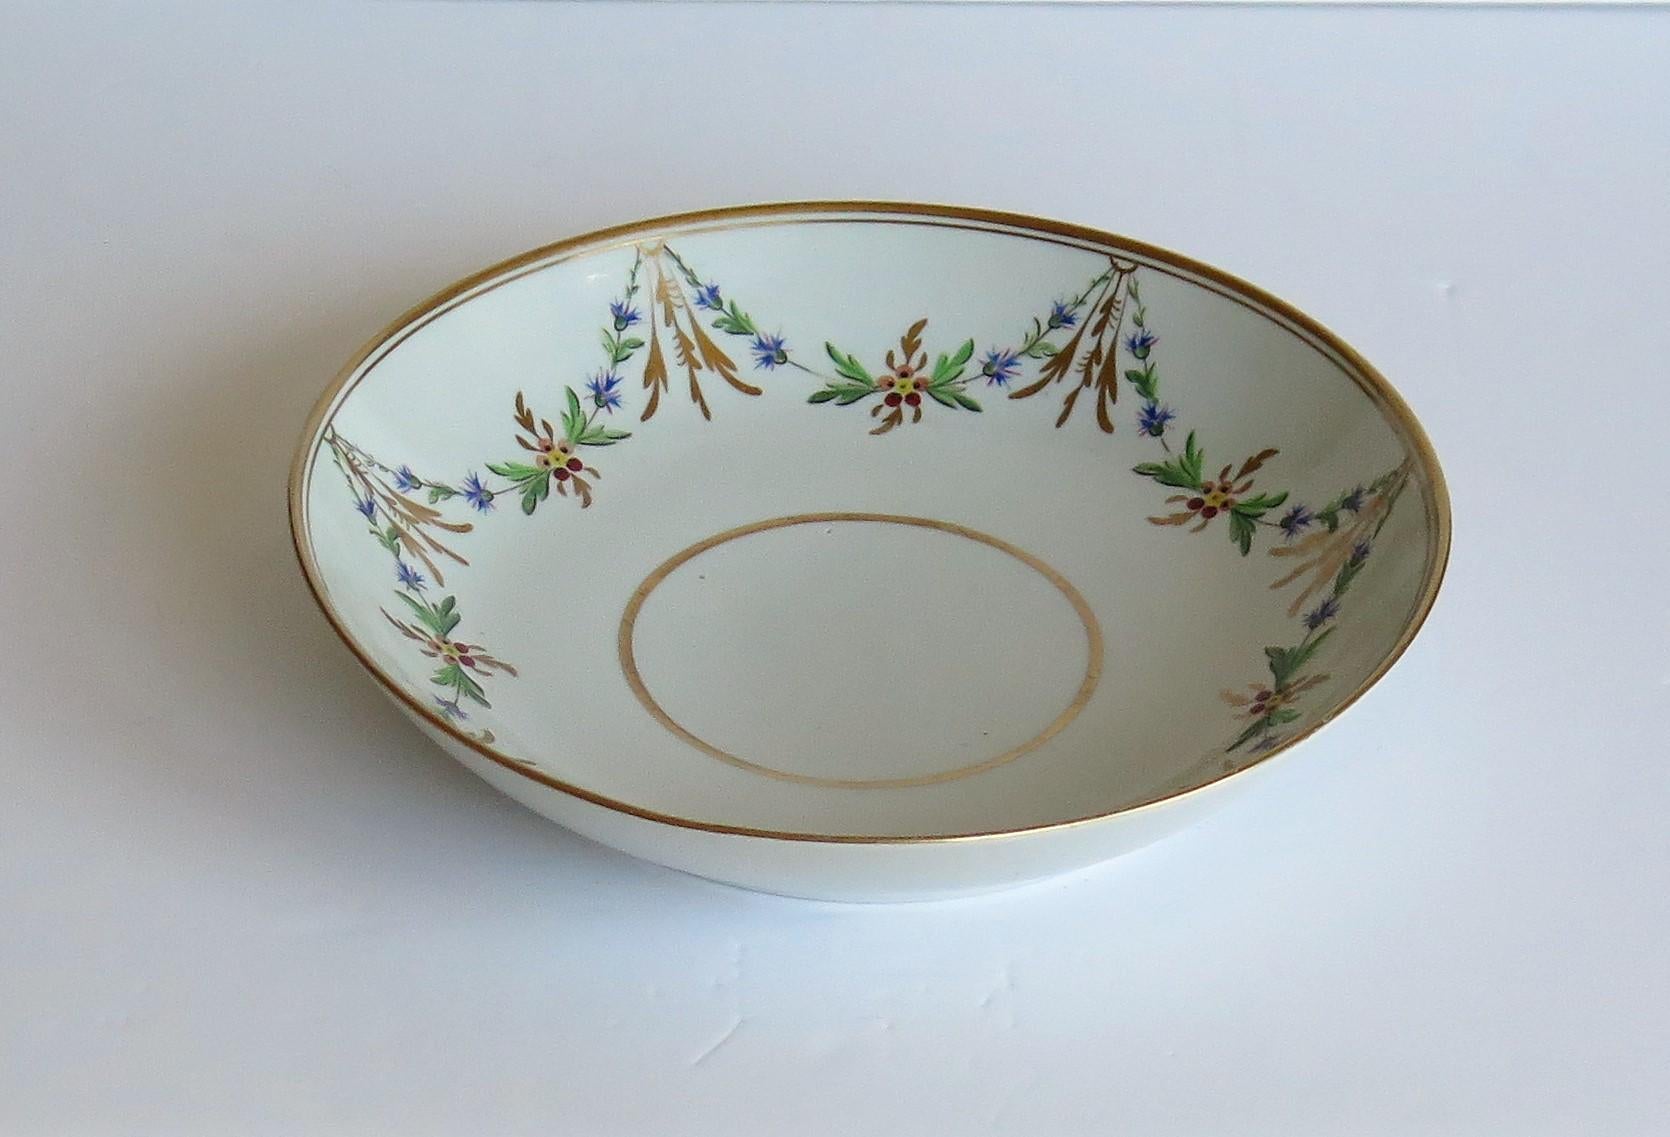 Es handelt sich um einen handbemalten und vergoldeten tiefen Teller oder eine Untertasse aus Porzellan, hergestellt von Miles Mason (Mason's), Staffordshire Potteries, England, in den ersten Jahren des 19. Jahrhunderts, der Zeit Georgs III. um